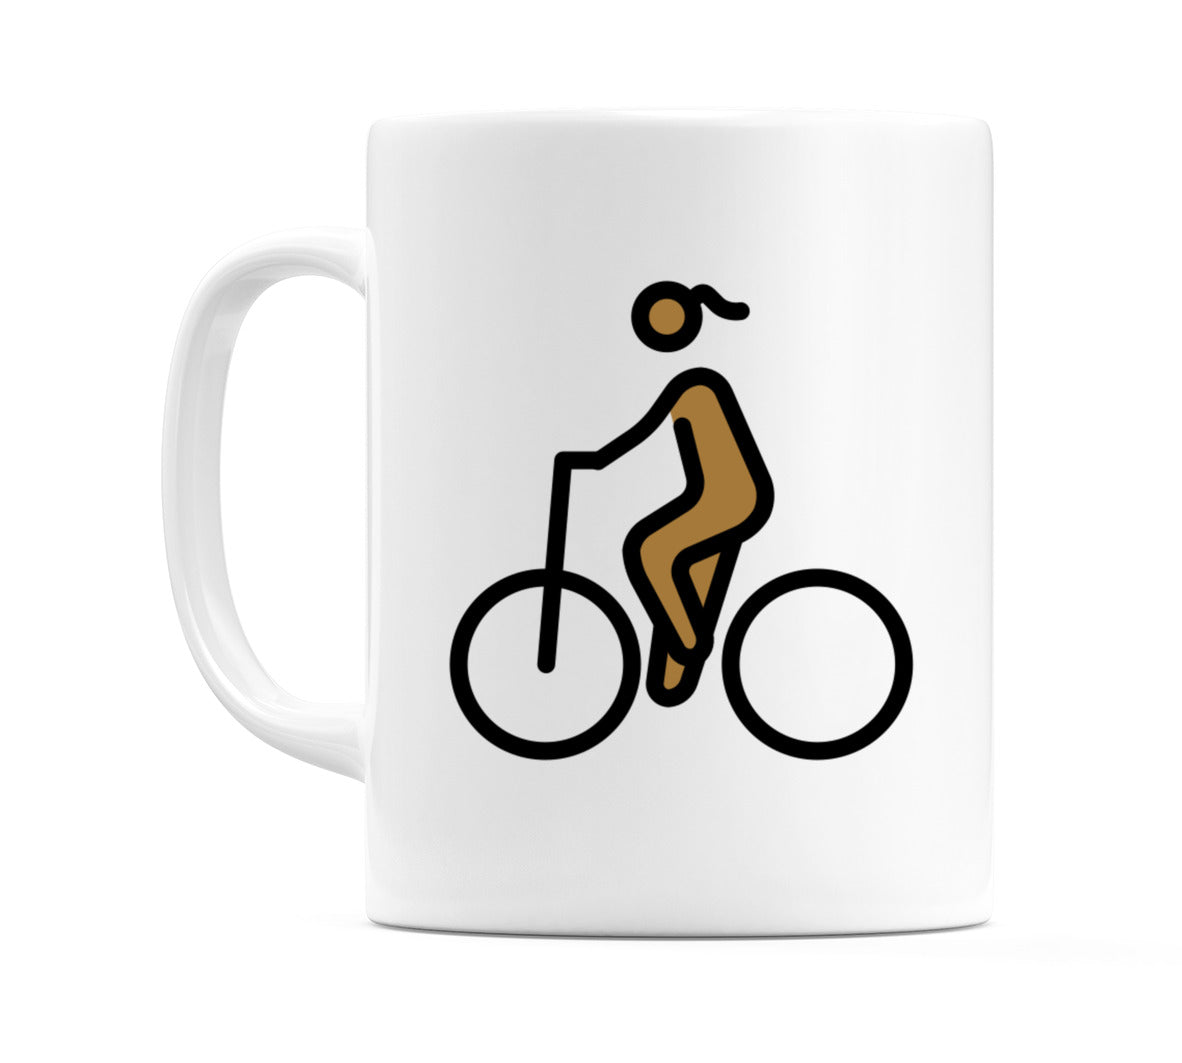 Female Biking: Medium-Dark Skin Tone Emoji Mug